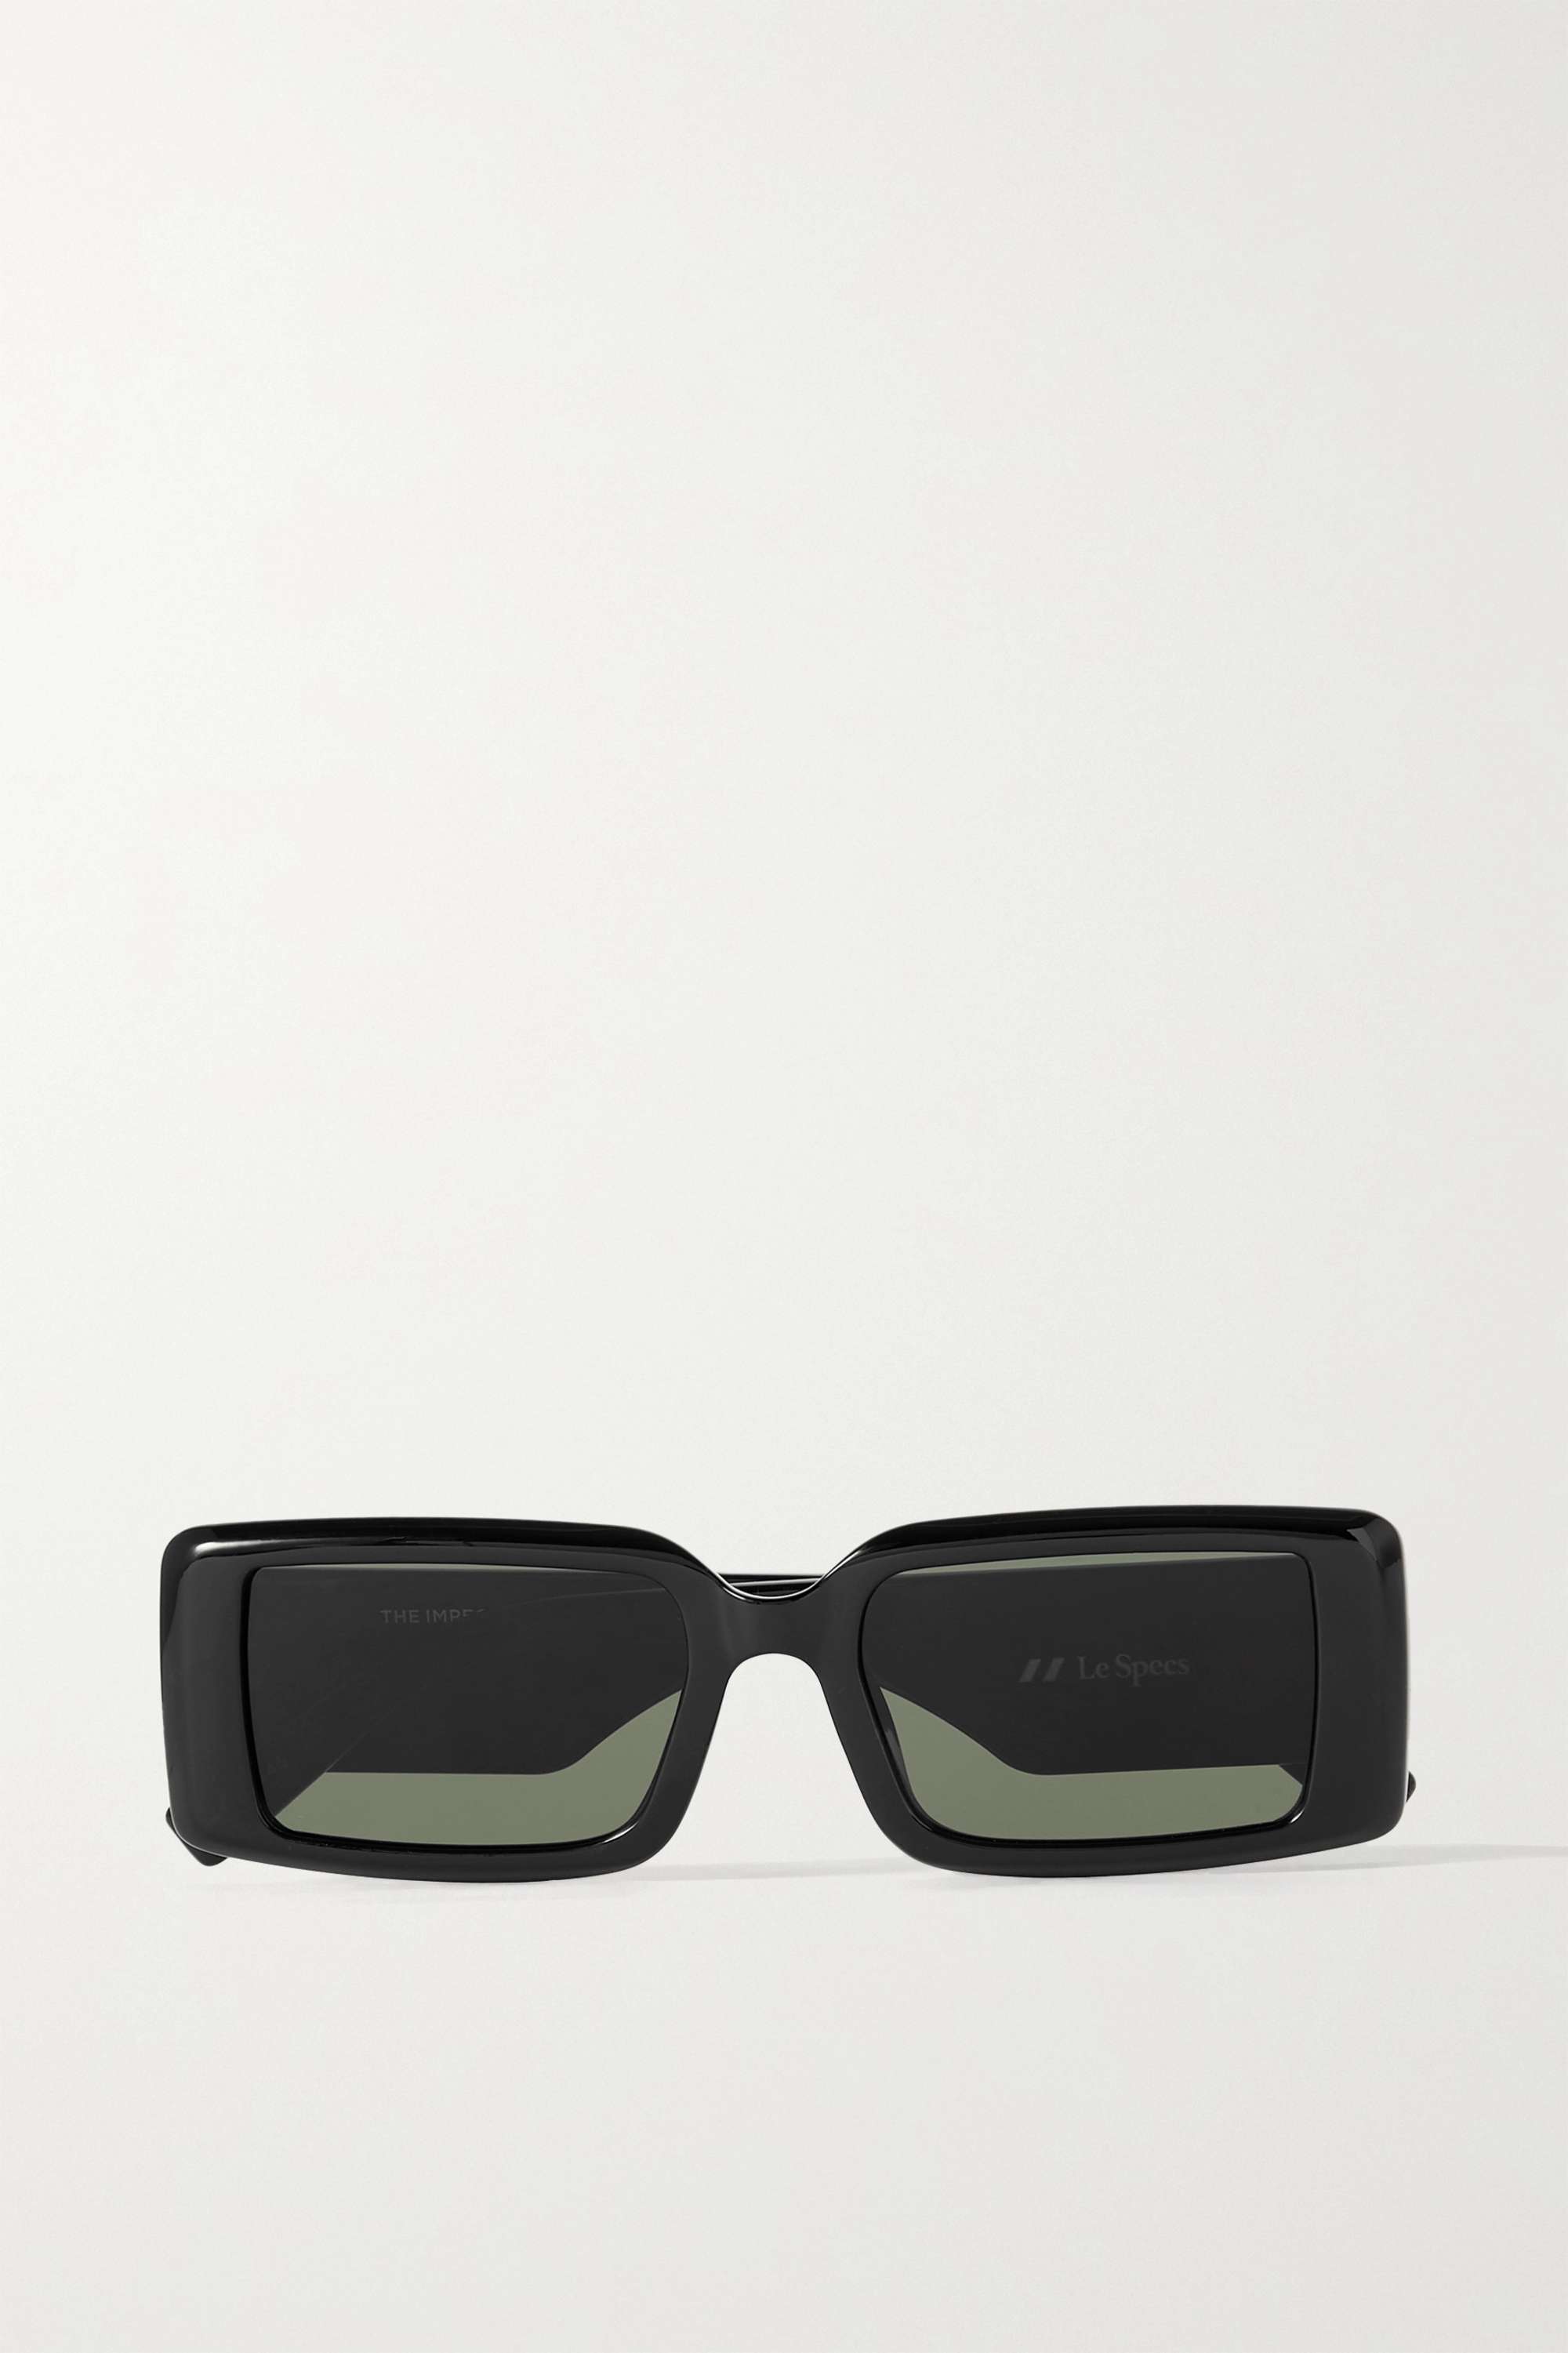 Le Specs The Impeccable Alt Fit Square Frame Acetate Sunglasses